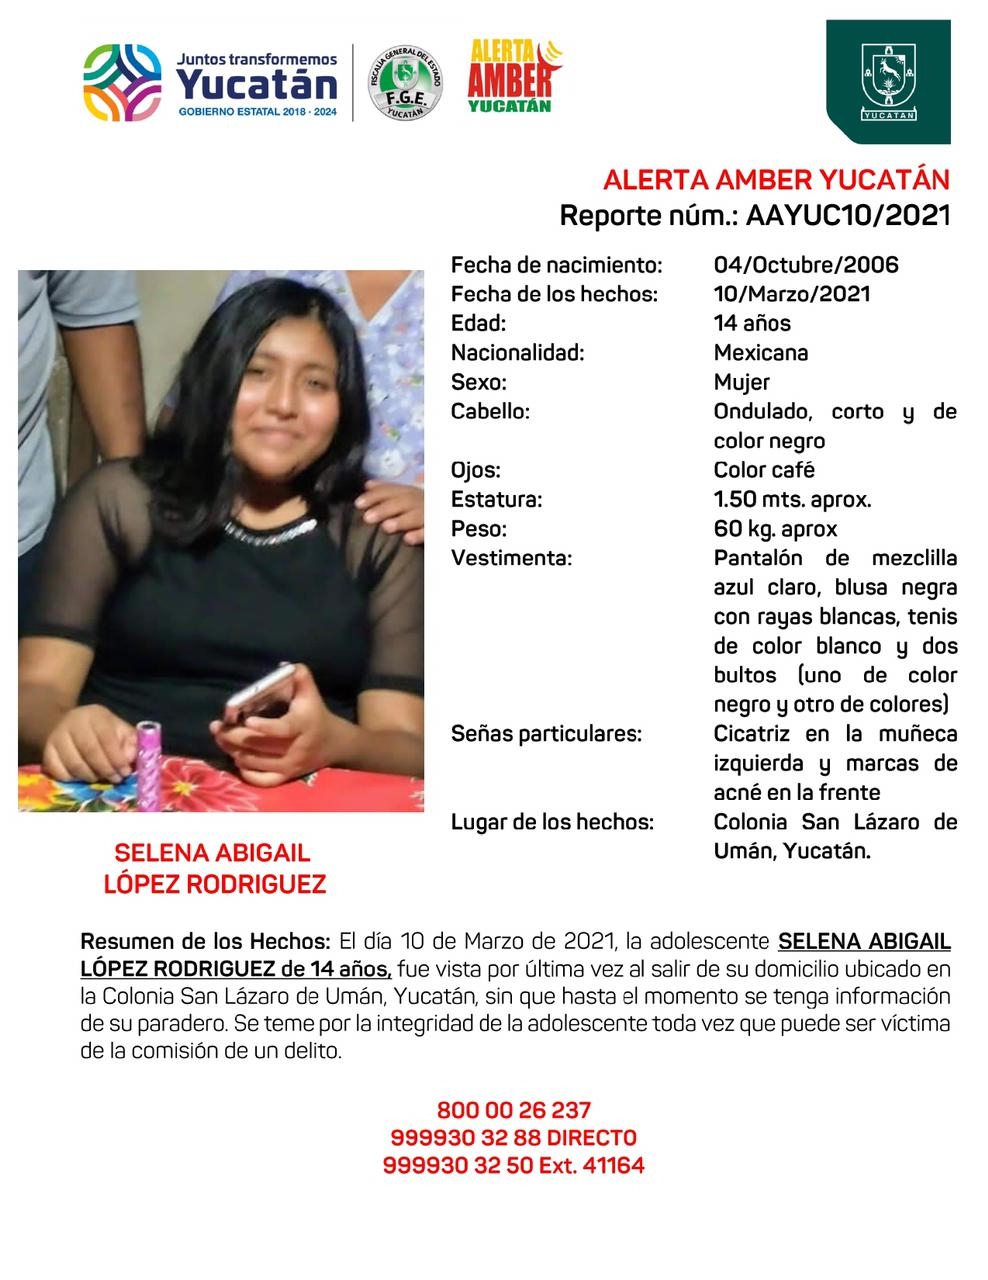 Activan Alerta Amber por adolescente de 14 años desaparecida en Umán, Yucatán